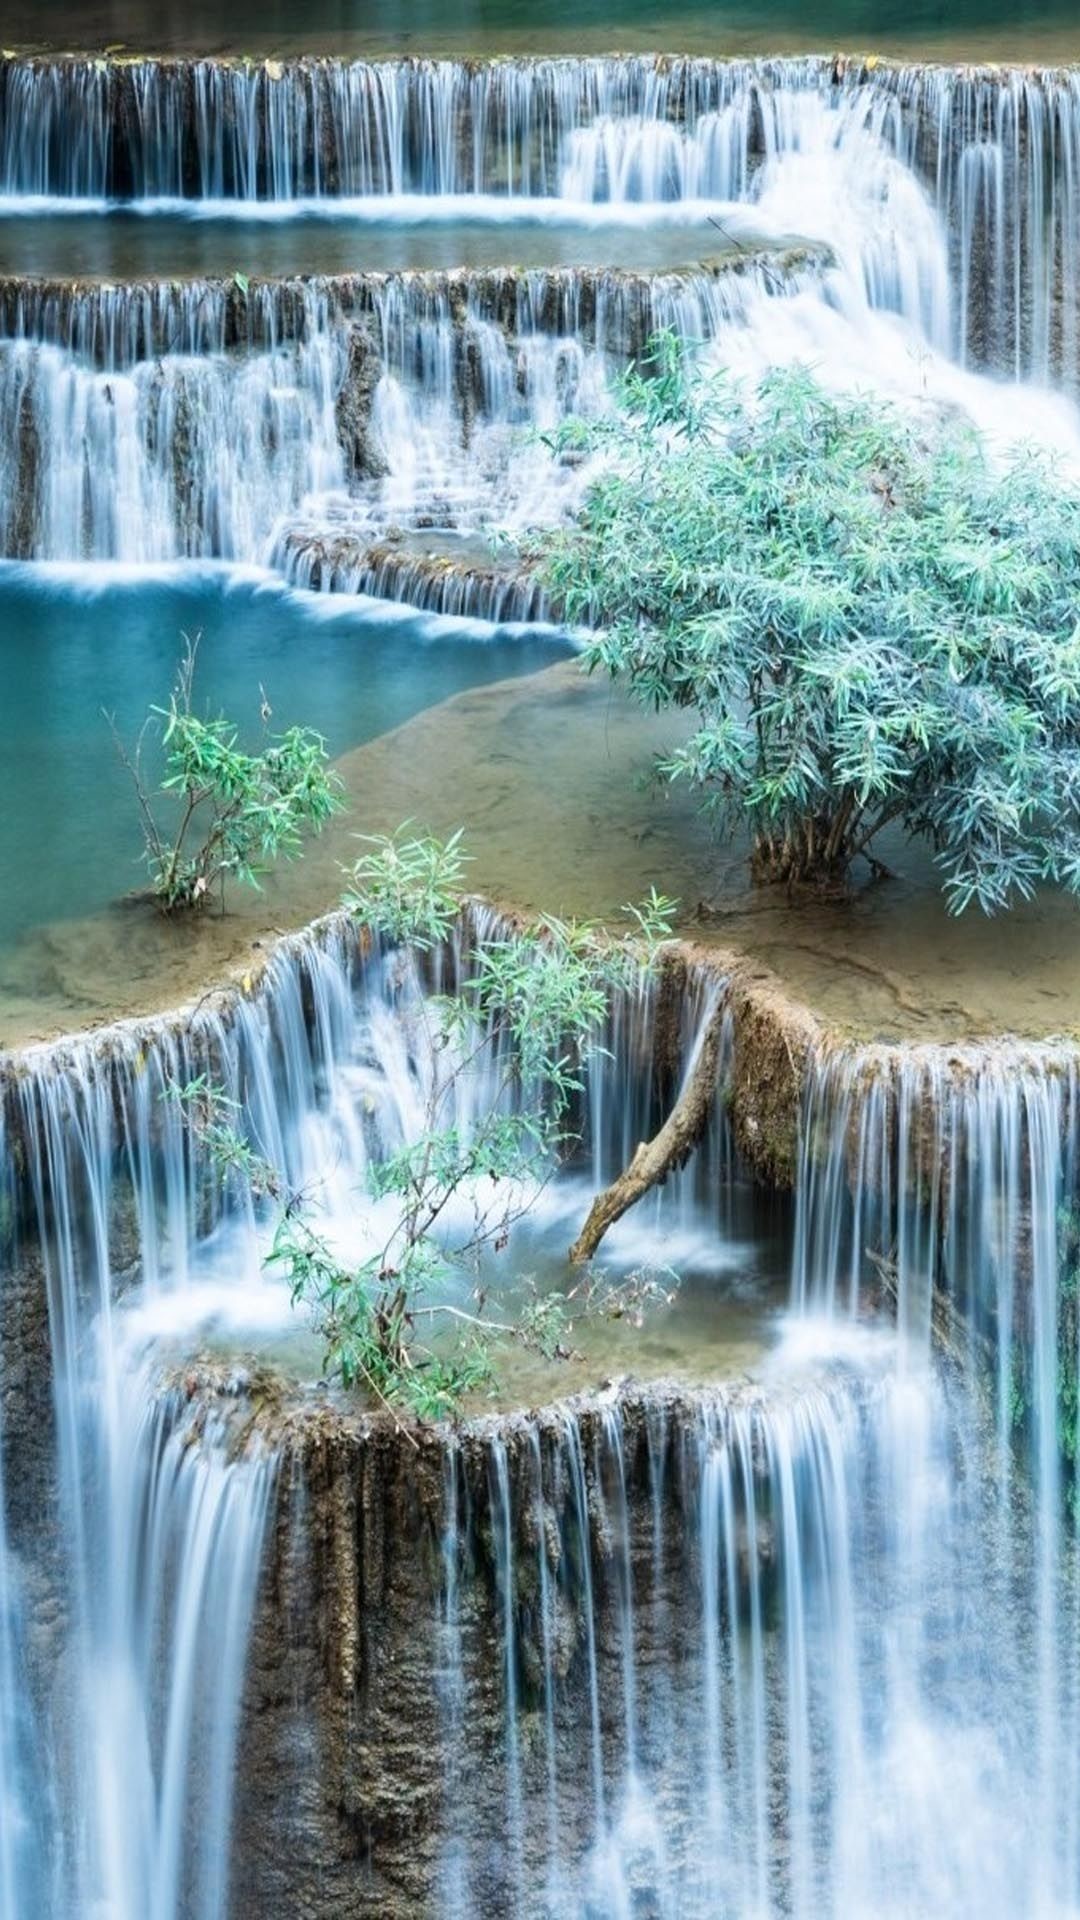 Hình nền thác nước cảnh đẹp sẽ đưa bạn vào một không gian tự nhiên hoang sơ và yên tĩnh. Với sự kết hợp tuyệt vời của nước và đá, những hình ảnh này sẽ mang lại cho bạn một cảm giác thư thái và bình yên.